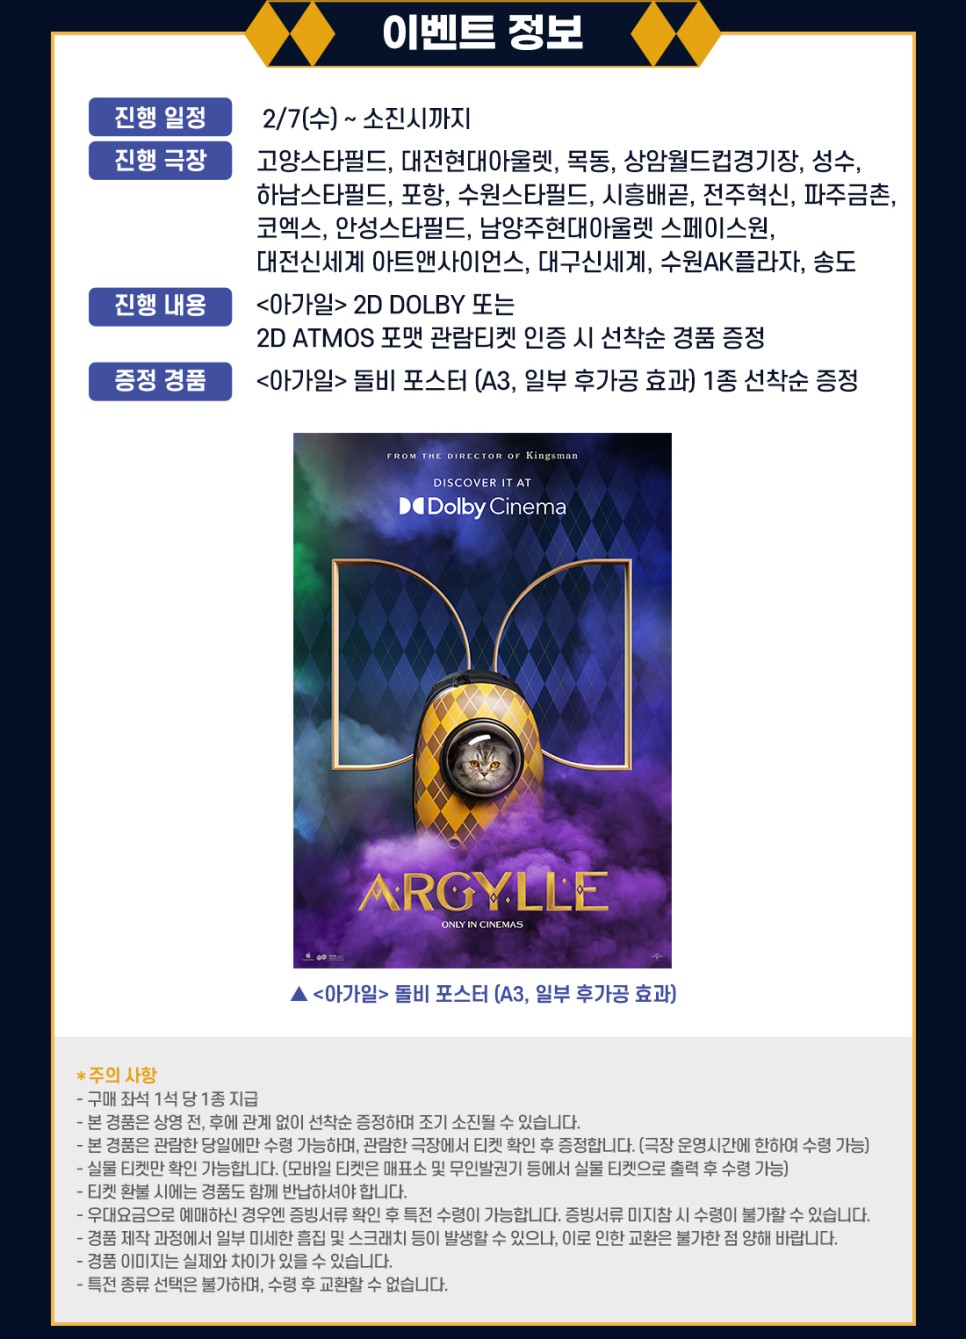 설연휴 극장 영화 추천 아가일 1주차 특전 정보 CGV 아이맥스 4DX 돌비 시네마 포스터 개봉일 증정